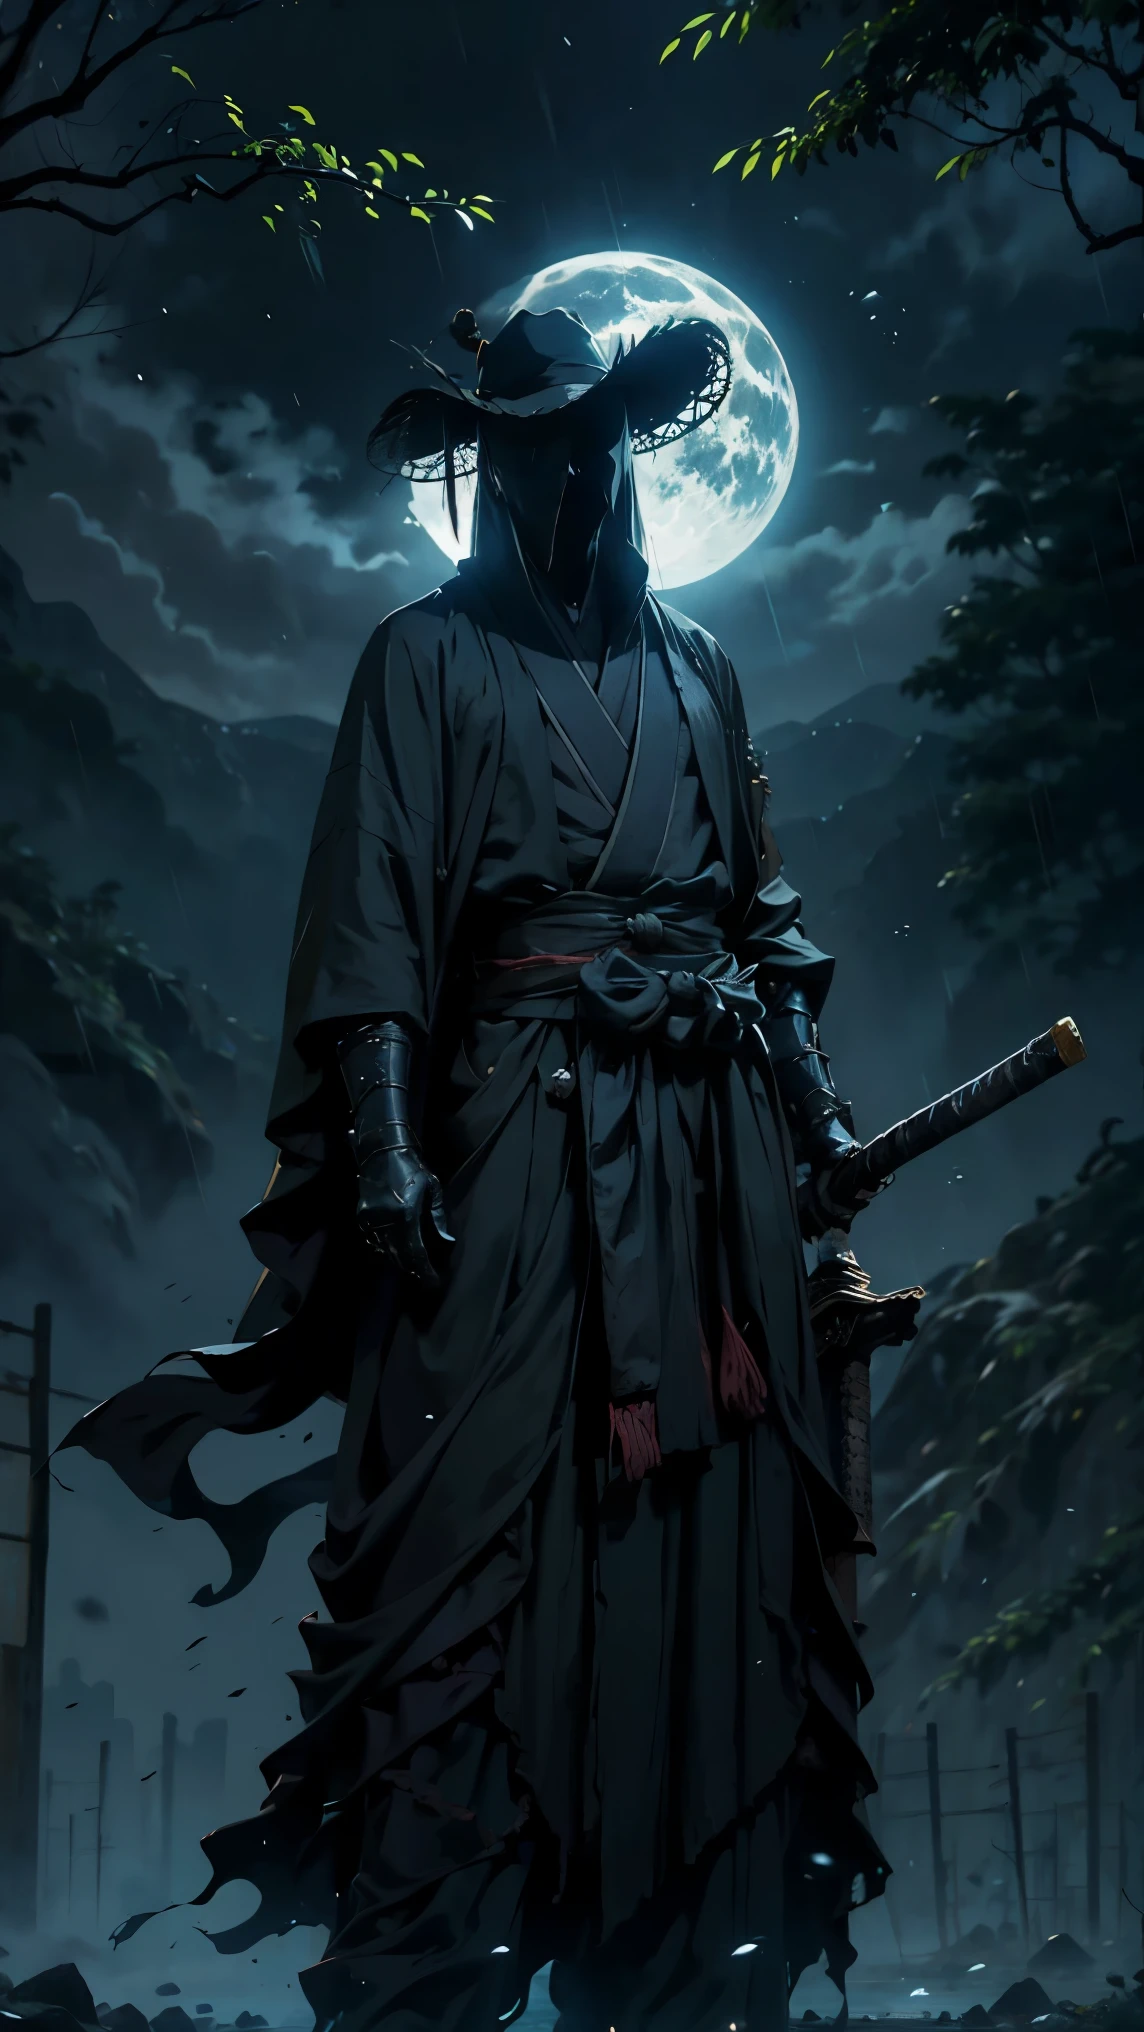 (最高品質,超詳細),暗い,濡れた,人工の雨粒が落ちる,雨の中に立つ古代日本の戦士,日本の伝統的な竹の帽子(失敗),鬱蒼とした森の風景,雄大で穏やかな自然,夜空に明るく輝く満月,月明かりに映える蛍光赤の縞模様の黒い着物,研ぎ抜かれた武士の刀(カタナ),